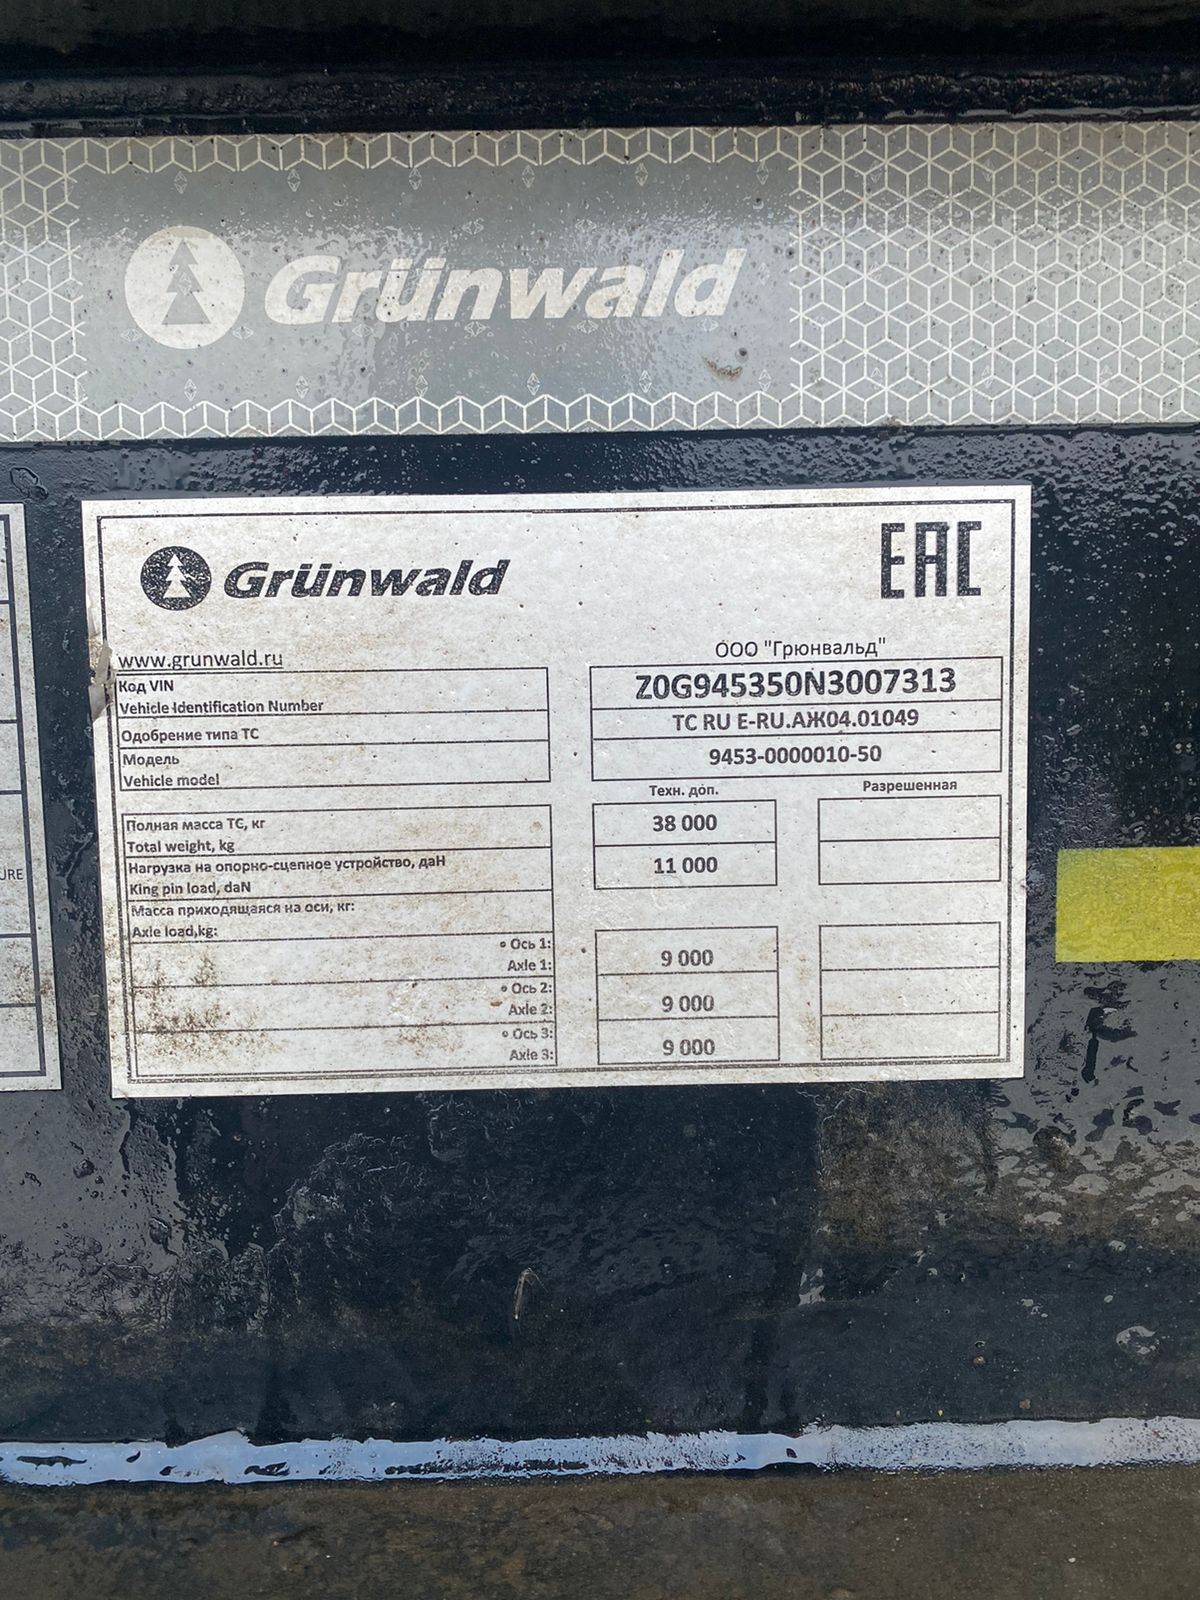 Grunwald Самосвальный TSt 31 (9453-0000010-50) Лот 000001306